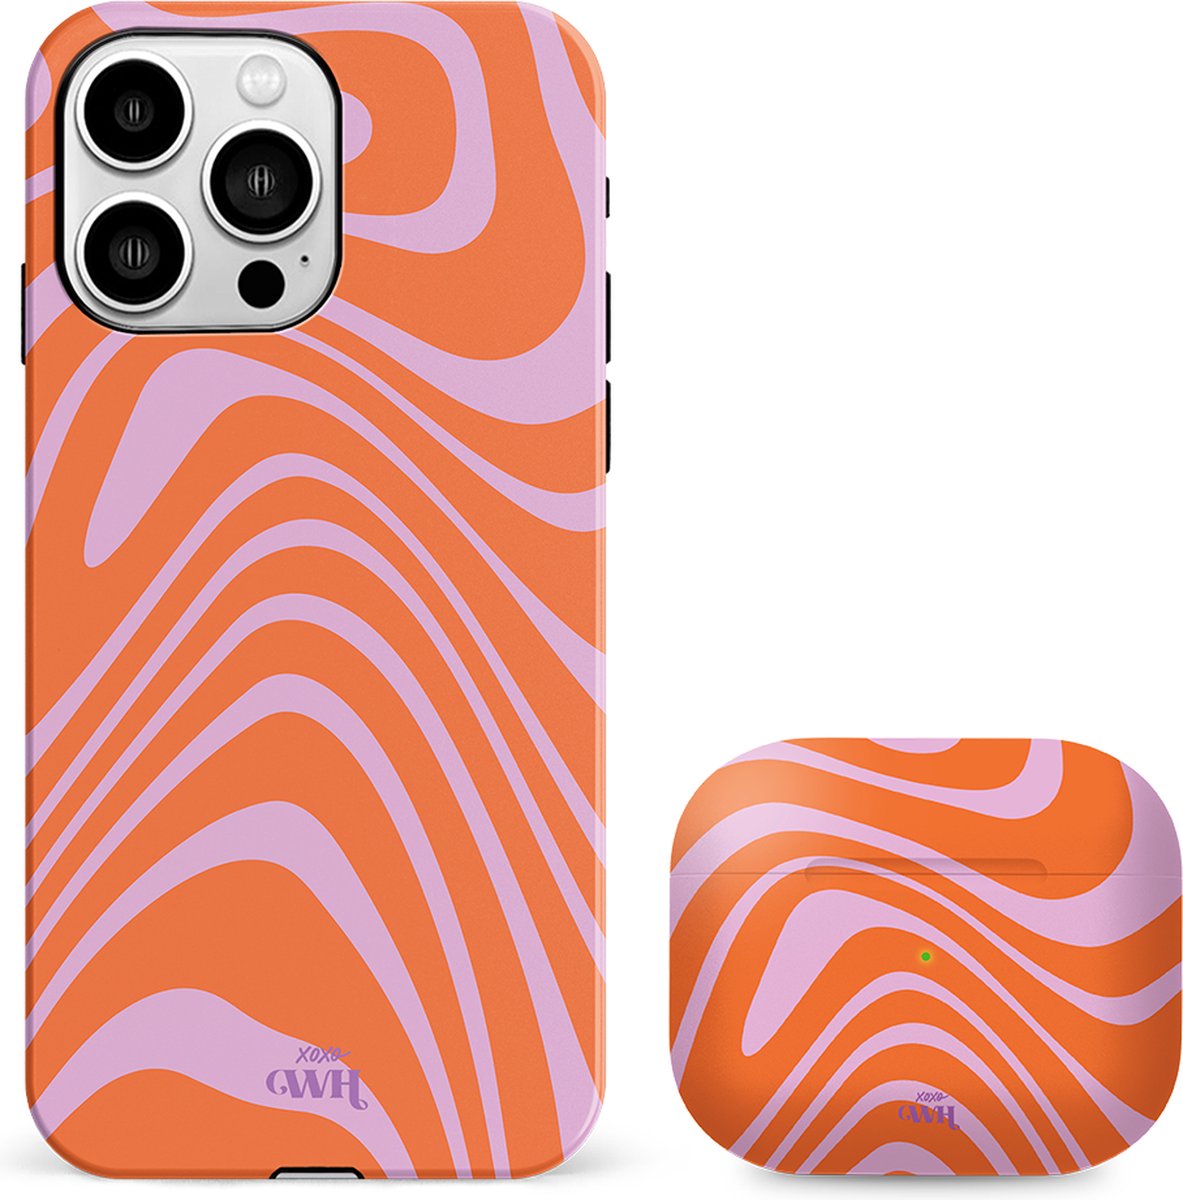 xoxo Wildhearts siliconen hardcase hoesje + Airpods Pro 1/2/Pro 2 hoesje - Geschikt voor iPhone 12 en Airpods Pro 1/2 en Pro 2 - Boogie Wonderland Orange - Double Layer telefoonhoesje - Oranje - Roze - Hoesje met print